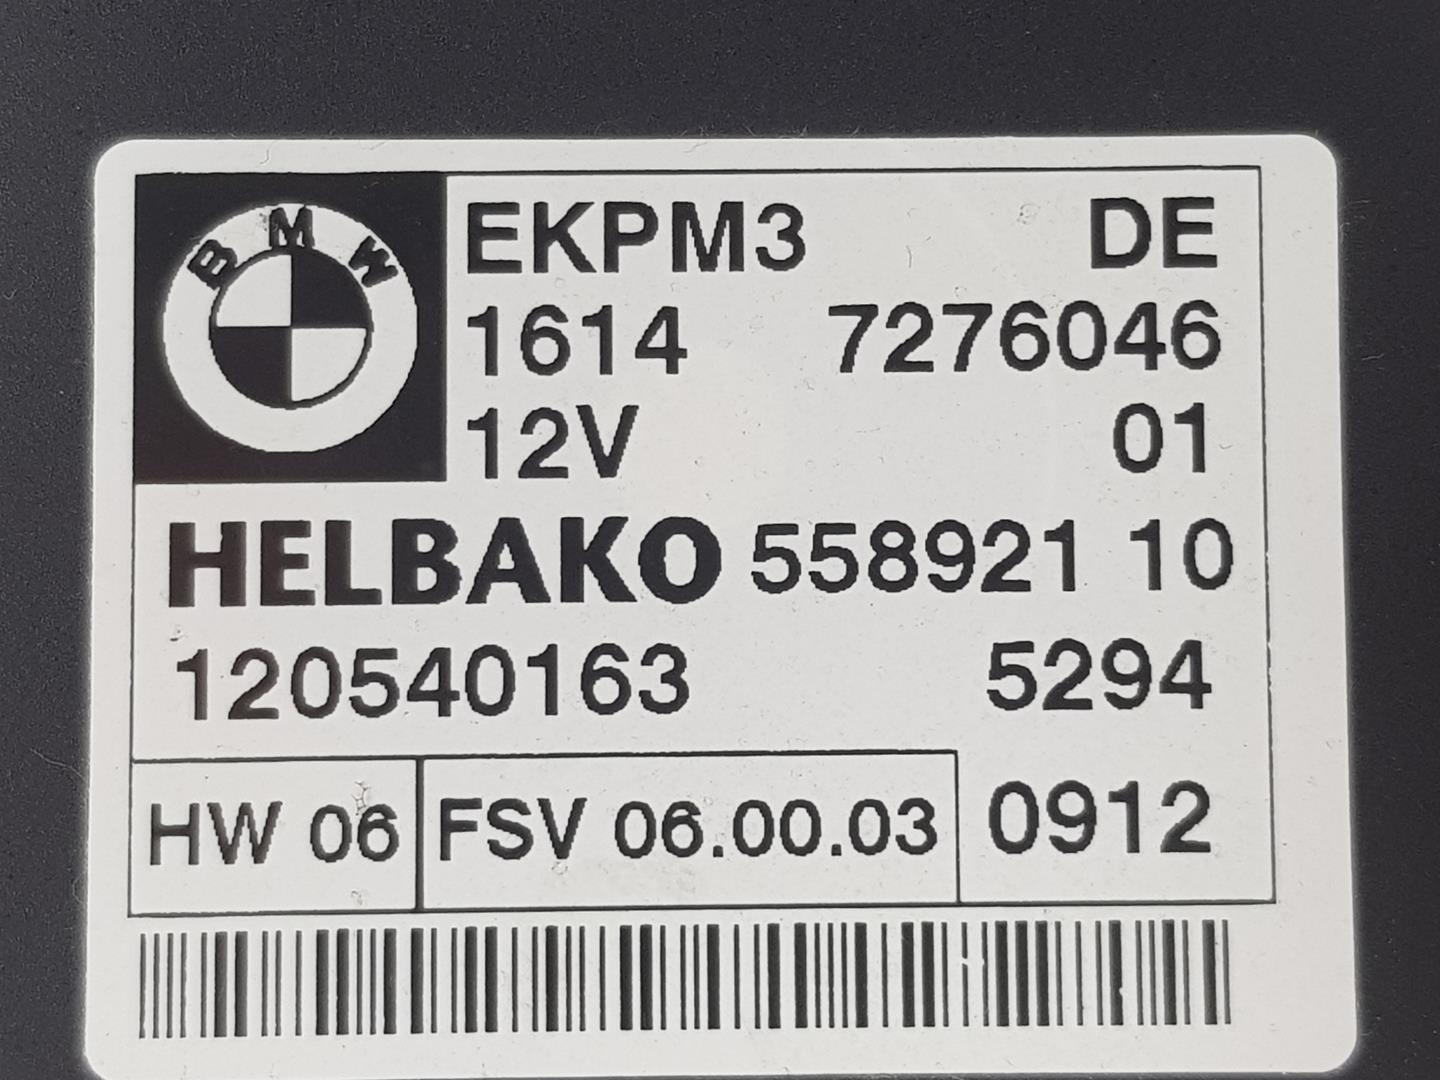 BMW 3 Series E90/E91/E92/E93 (2004-2013) Другие блоки управления 16147276046, 7276046 19927079